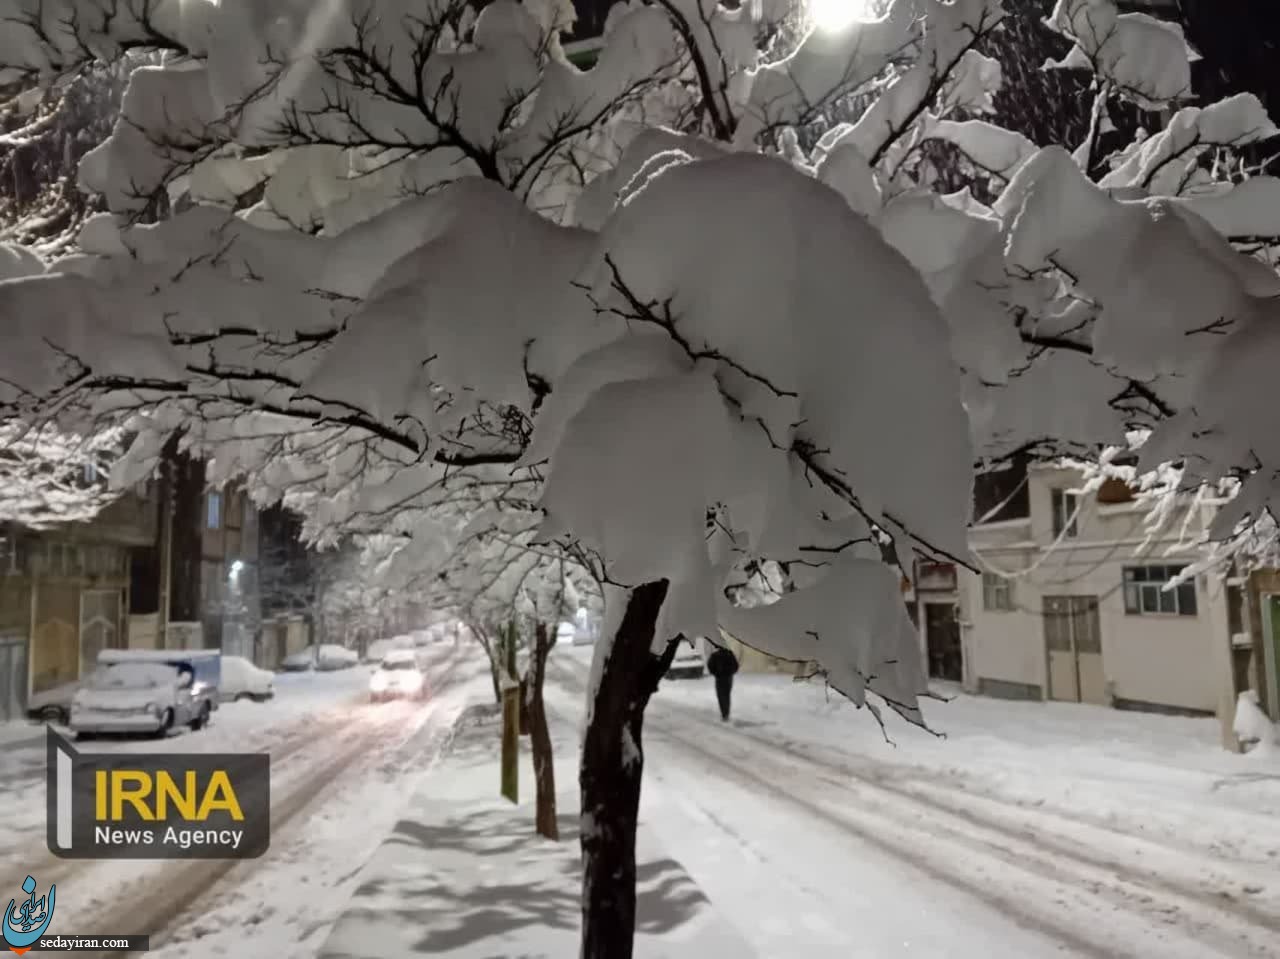 ارتفاع برف در اردبیل و مشگین شهر از ۳۰ سانتیمتر گذشت / تصاویر